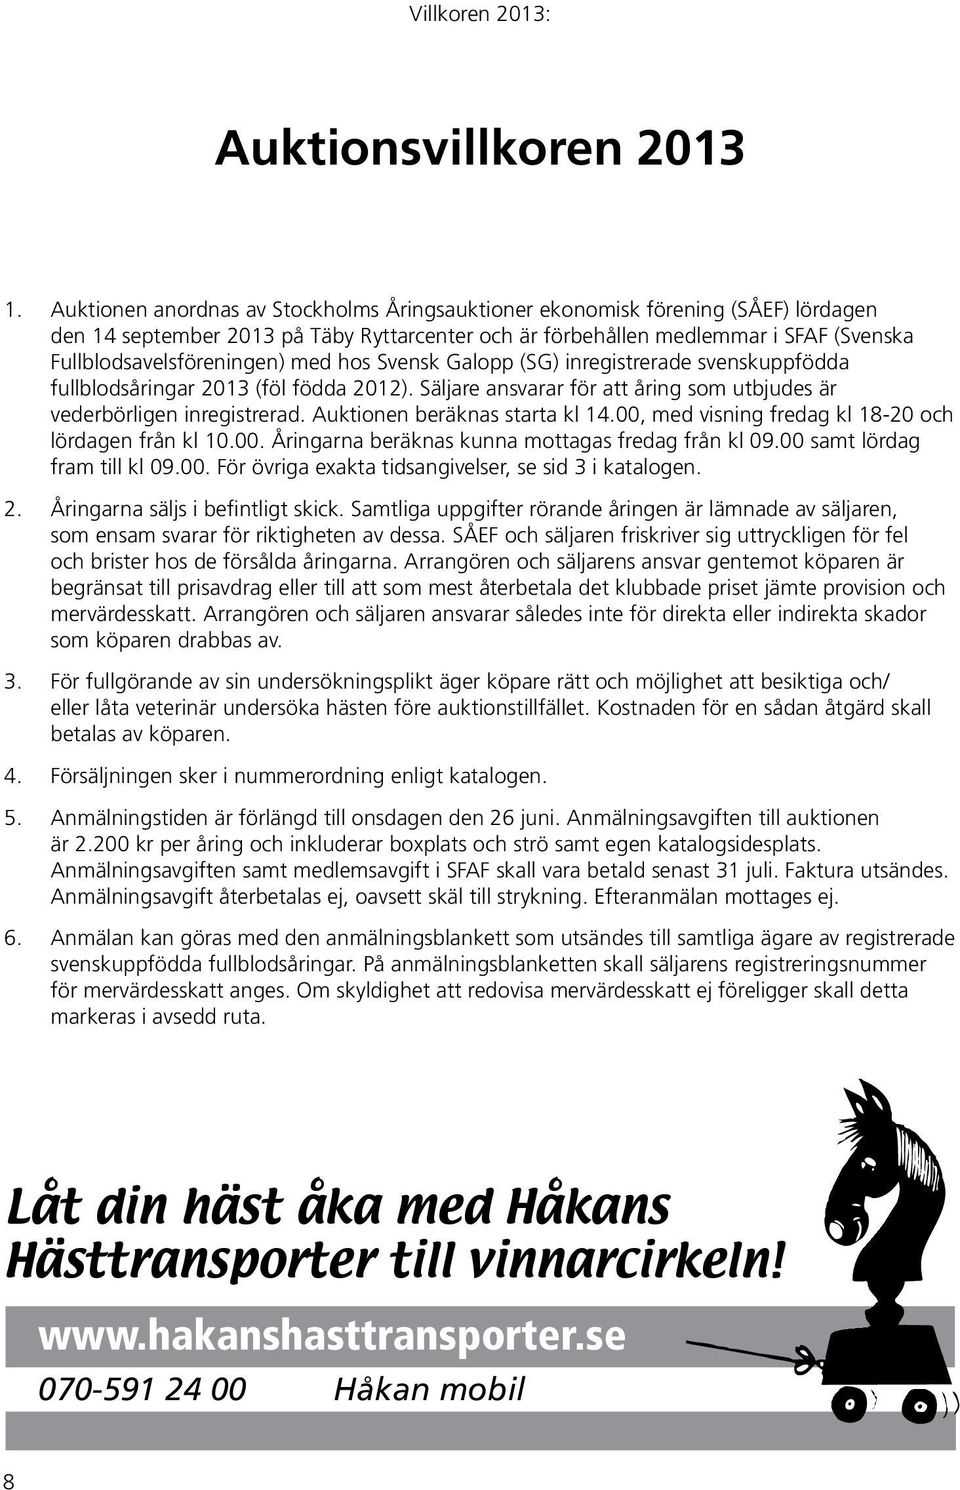 med hos Svensk Galopp (SG) inregistrerade svenskuppfödda fullblodsåringar 2013 (föl födda 2012). Säljare ansvarar för att åring som utbjudes är vederbörligen inregistrerad.